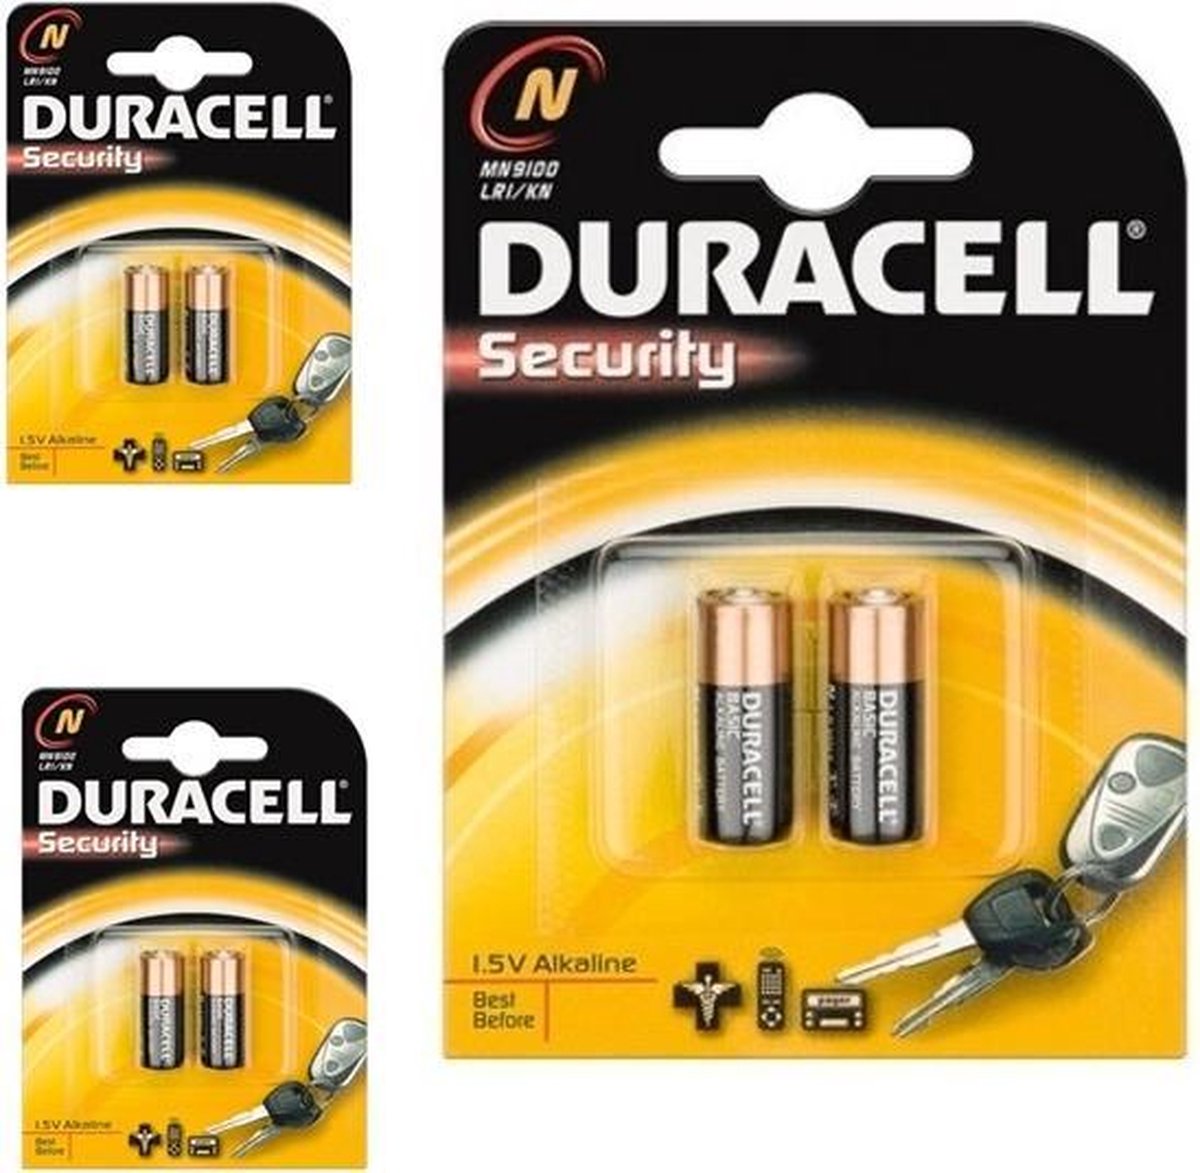 Bedoel Vergevingsgezind stapel 6 Stuks (3 Blisters a 2st) - Duracell LR1 / N / E90 / 910A 1,5 V Alkaline  batterij... | bol.com